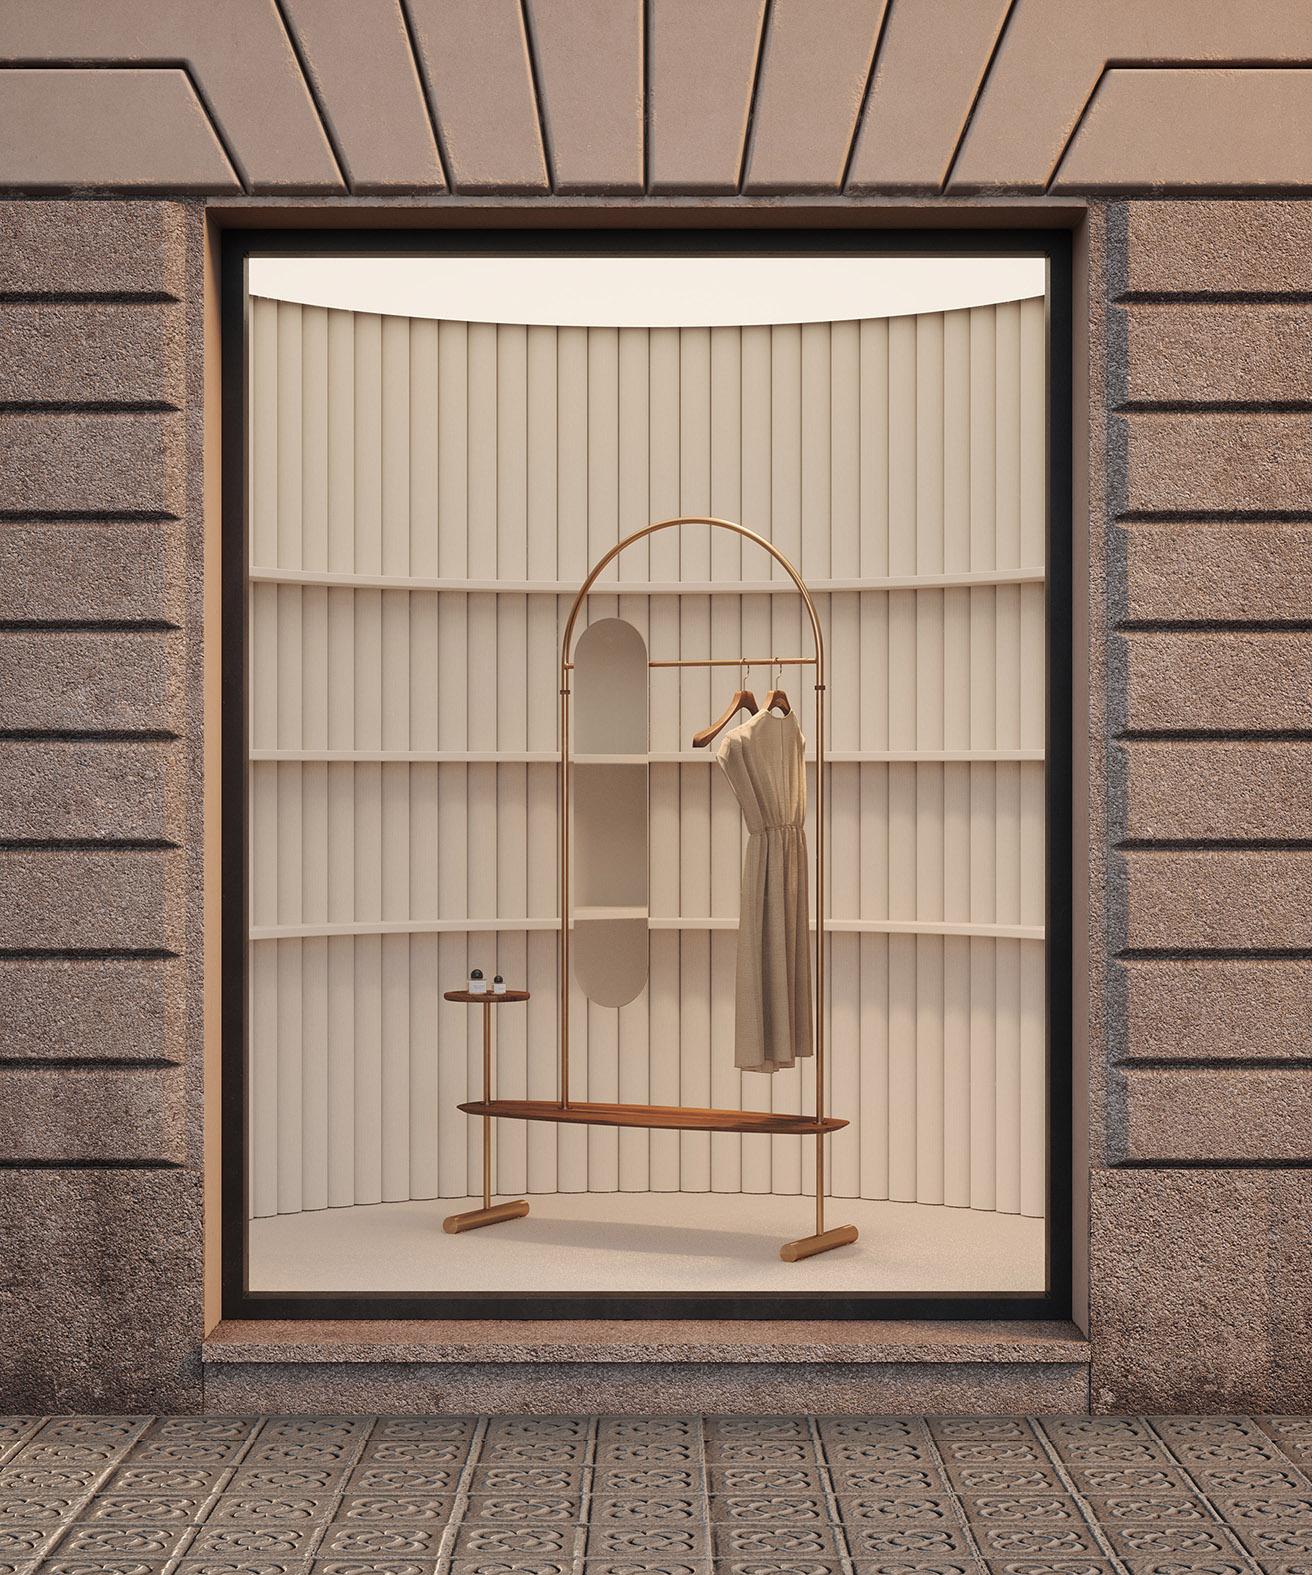 Élégant et minimaliste, le porte-vêtements Arco comprend un long miroir ovale, une étagère en placage de bois, un petit plateau et deux cintres en bois. Conçu et produit en Espagne avec des matériaux naturels et des formes organiques, le